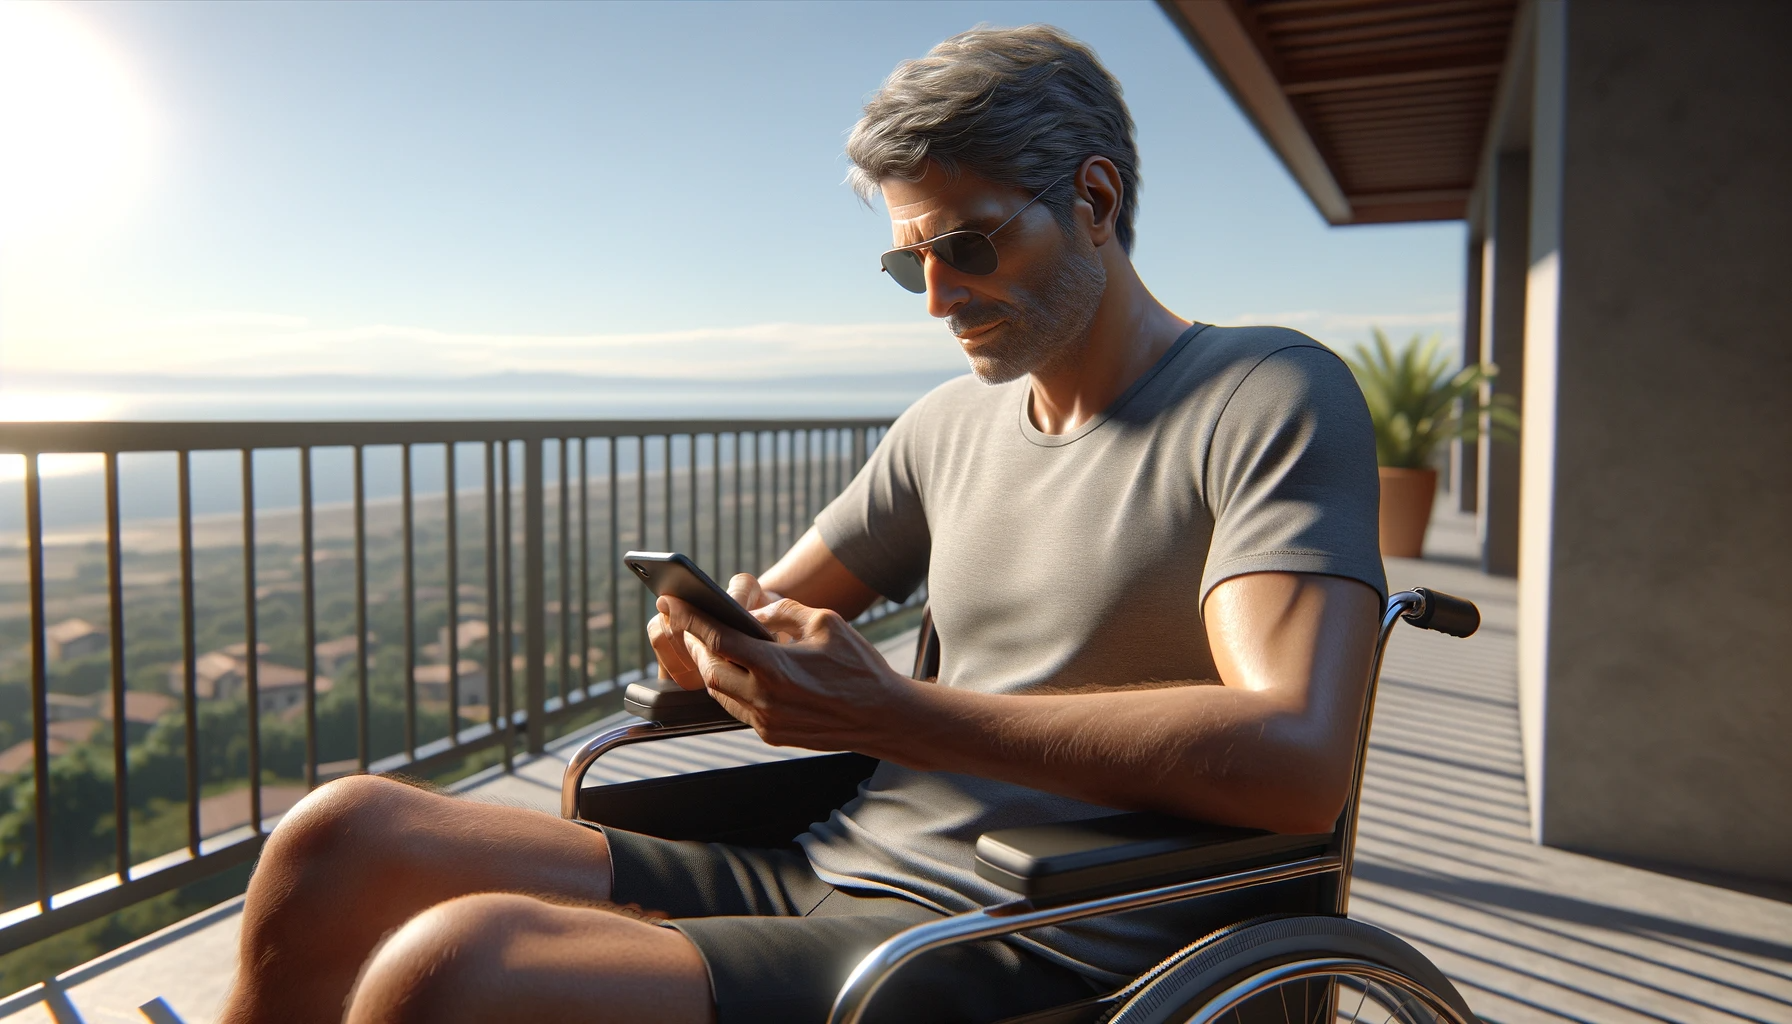 Na zdjęciu przedstawiony jest mężczyzna w średnim wieku, siedzący na balkonie w wózku inwalidzkim i korzystający ze smartfona. Ma na sobie szare, casualowe ubranie i ciemne okulary przeciwsłoneczne. Sceneria za nim obejmuje widok na morze i jasne niebo. Światło słoneczne delikatnie rozświetla scenę, a całość kompozycji przekazuje atmosferę relaksu i nowoczesności.